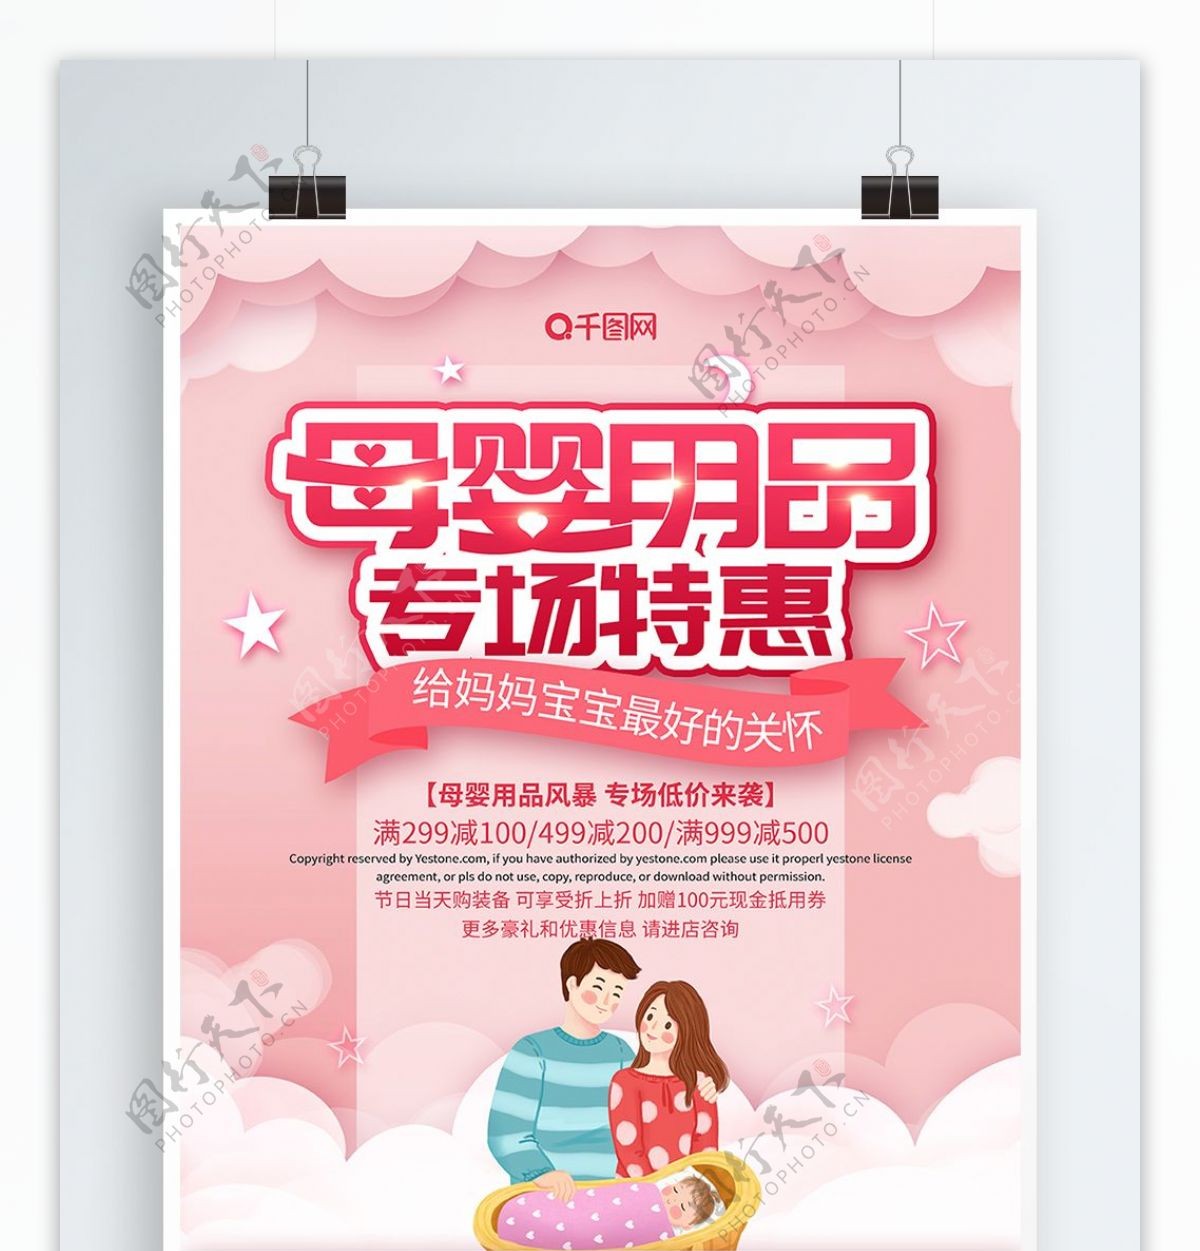 粉色大气母婴用品专场特惠海报